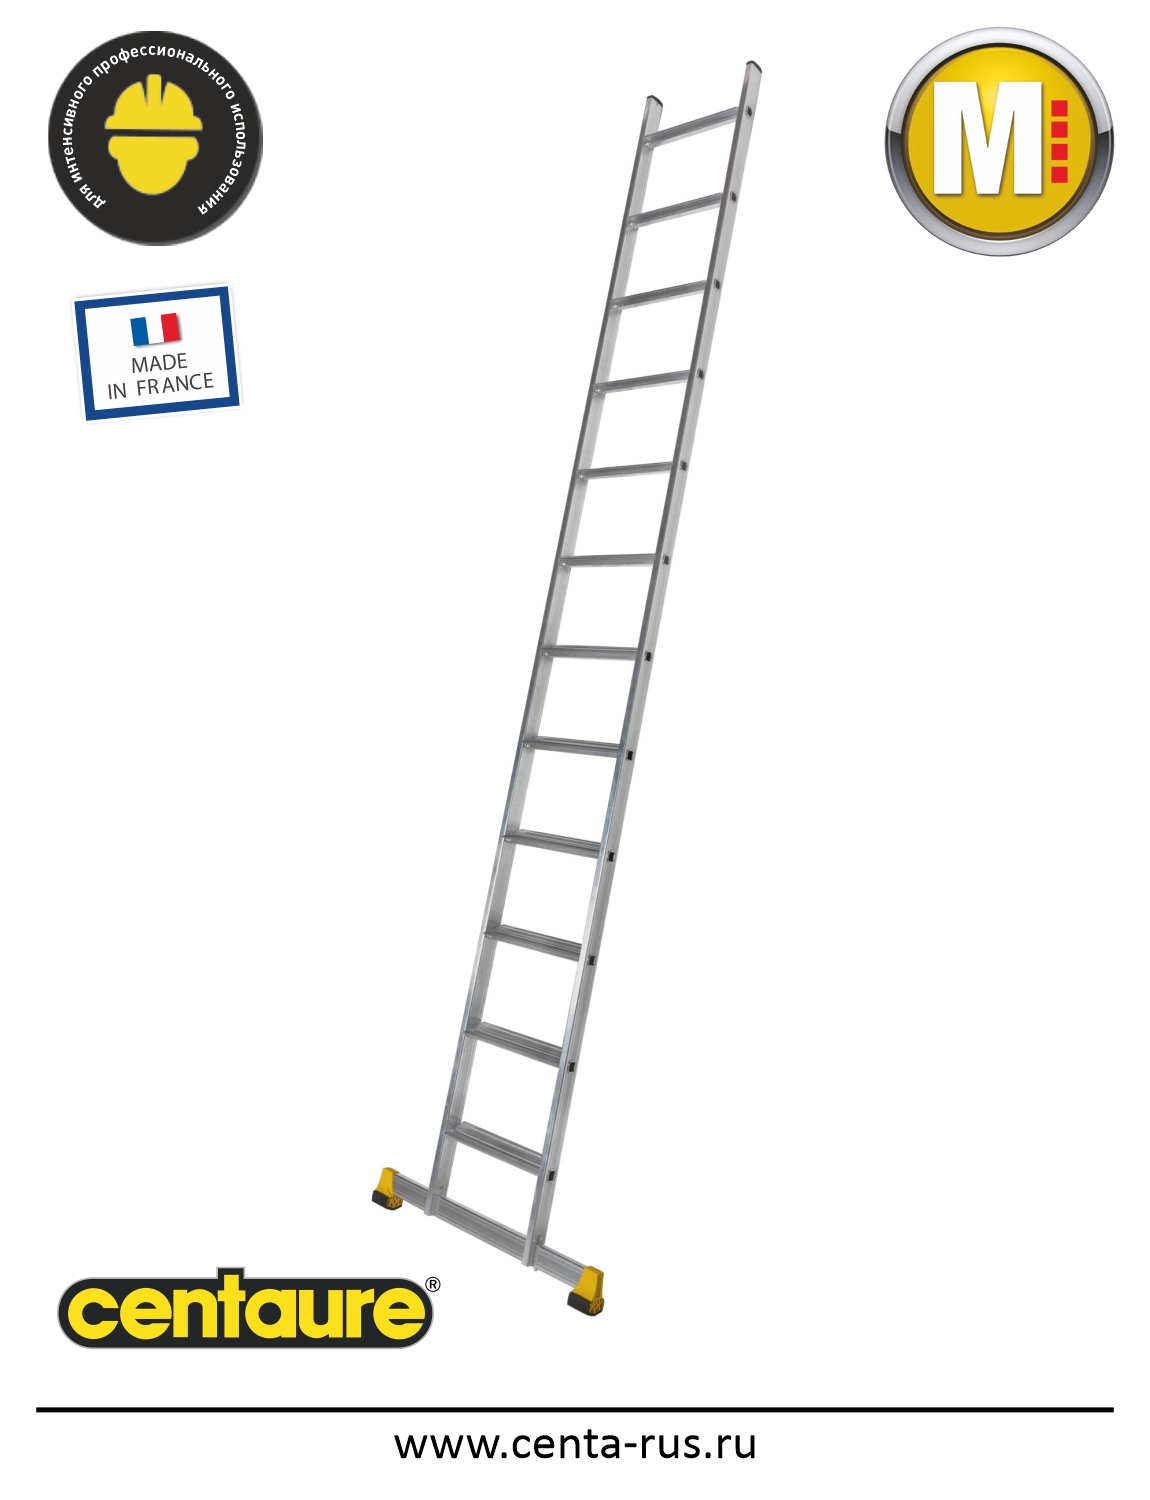 Односекционная лестница Centaure SM 12 ступеней 510912